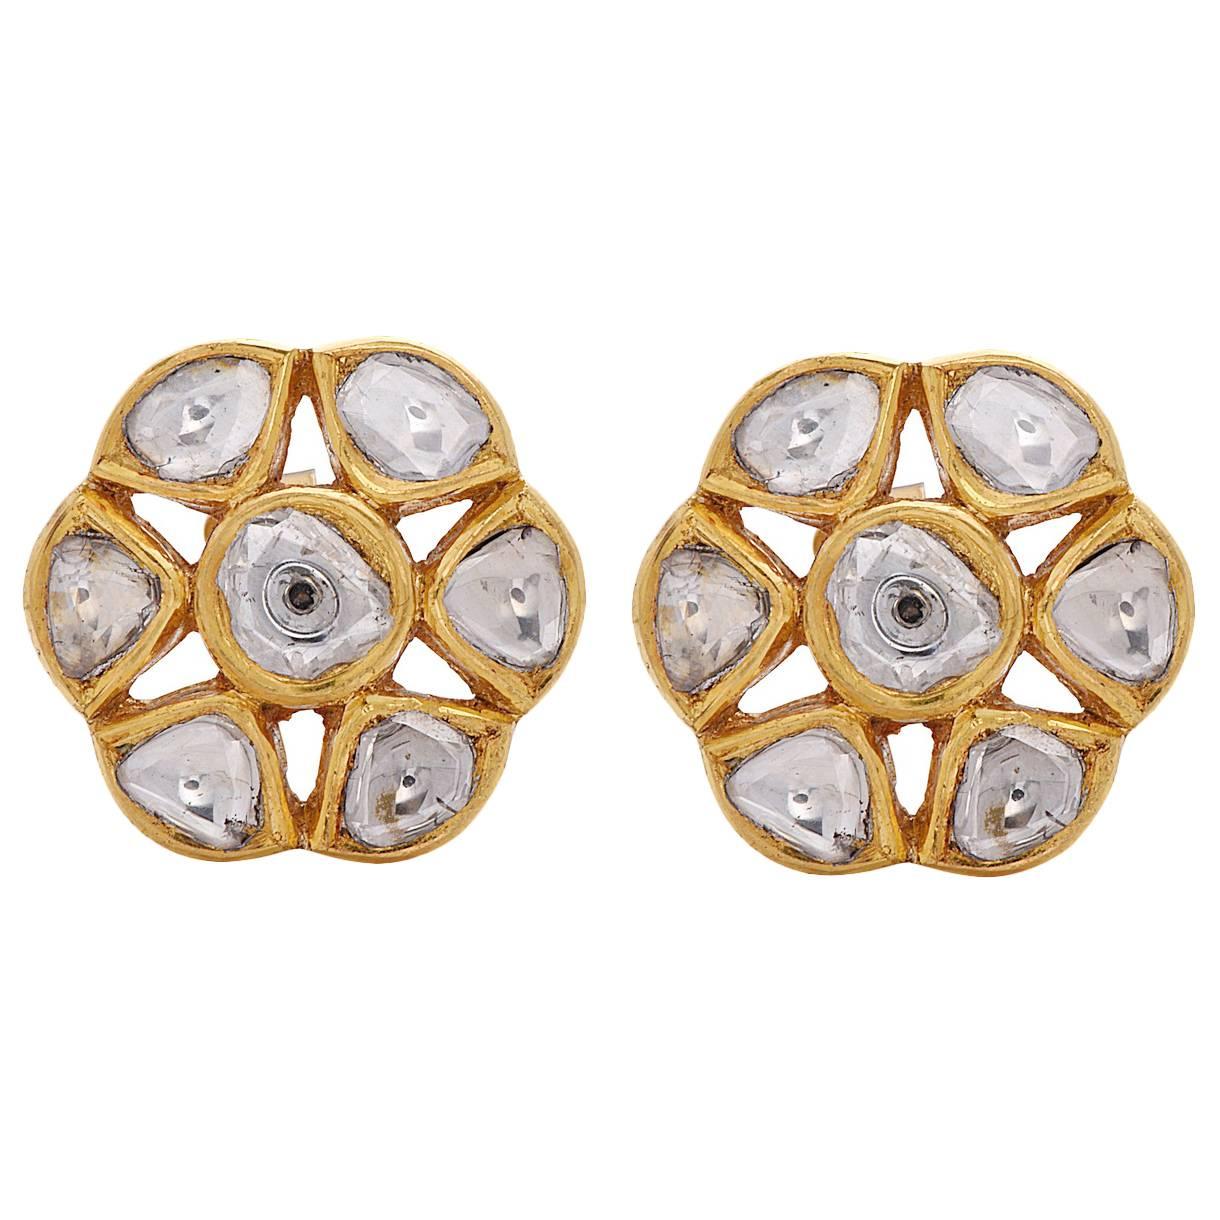 Unique Floral Rose Cut Diamond Gold Stud Earrings